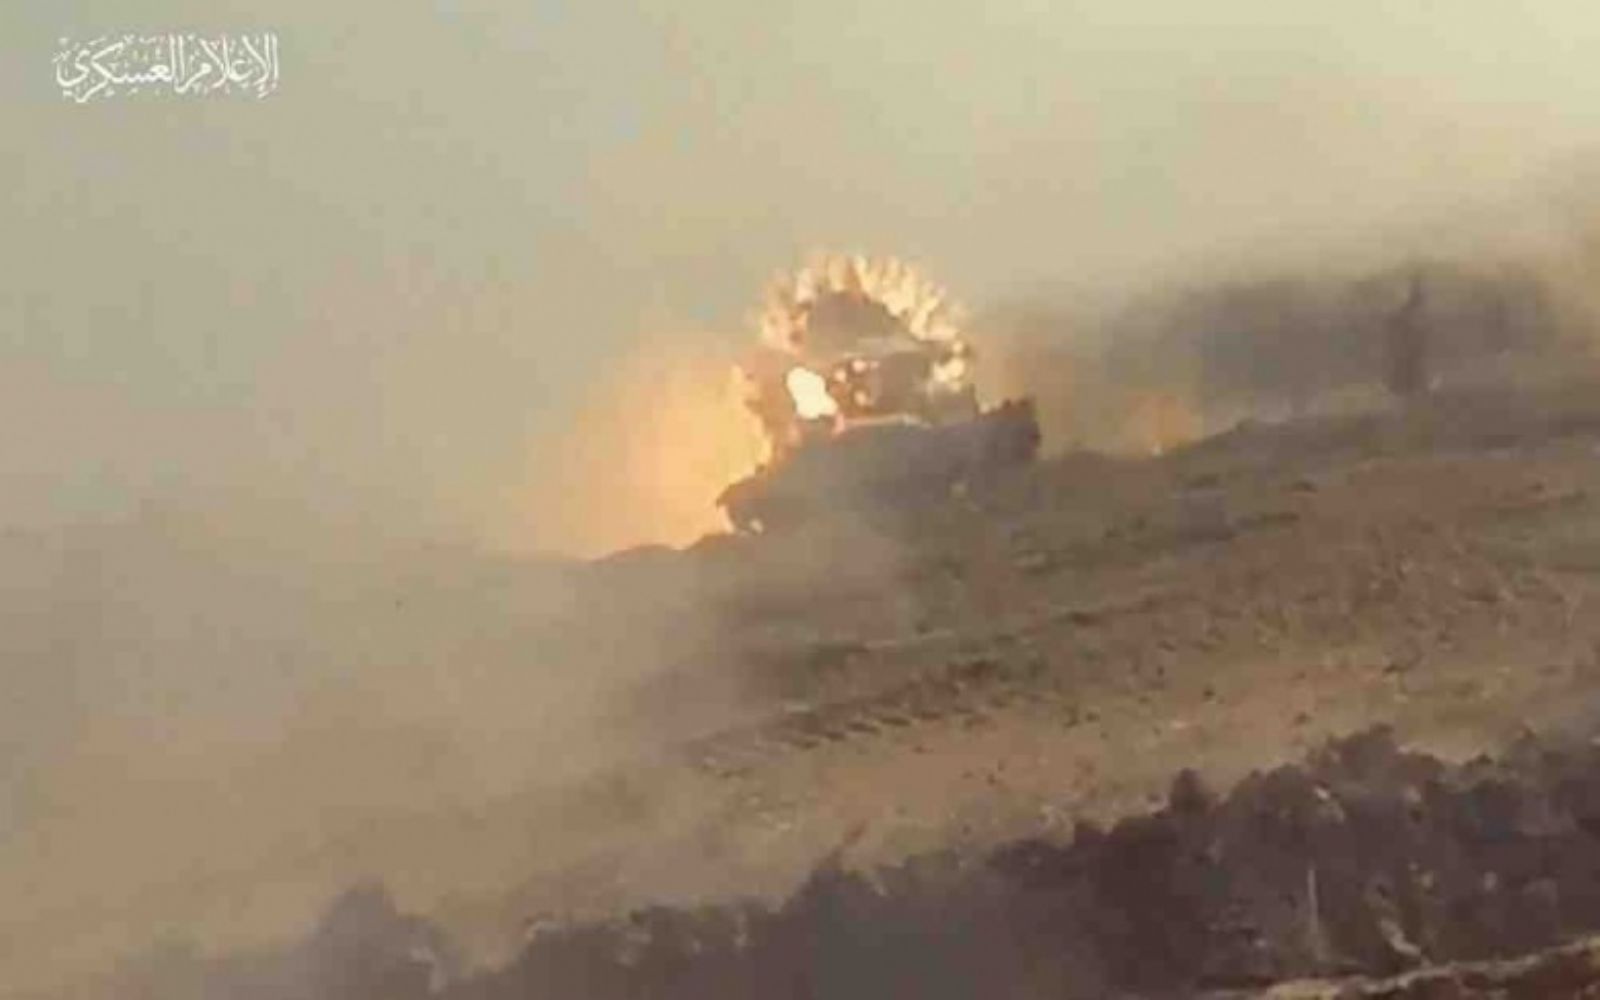 المقاومة تعلن تدمير دبابة إسرائيلية وقصف قاعدة رعيم